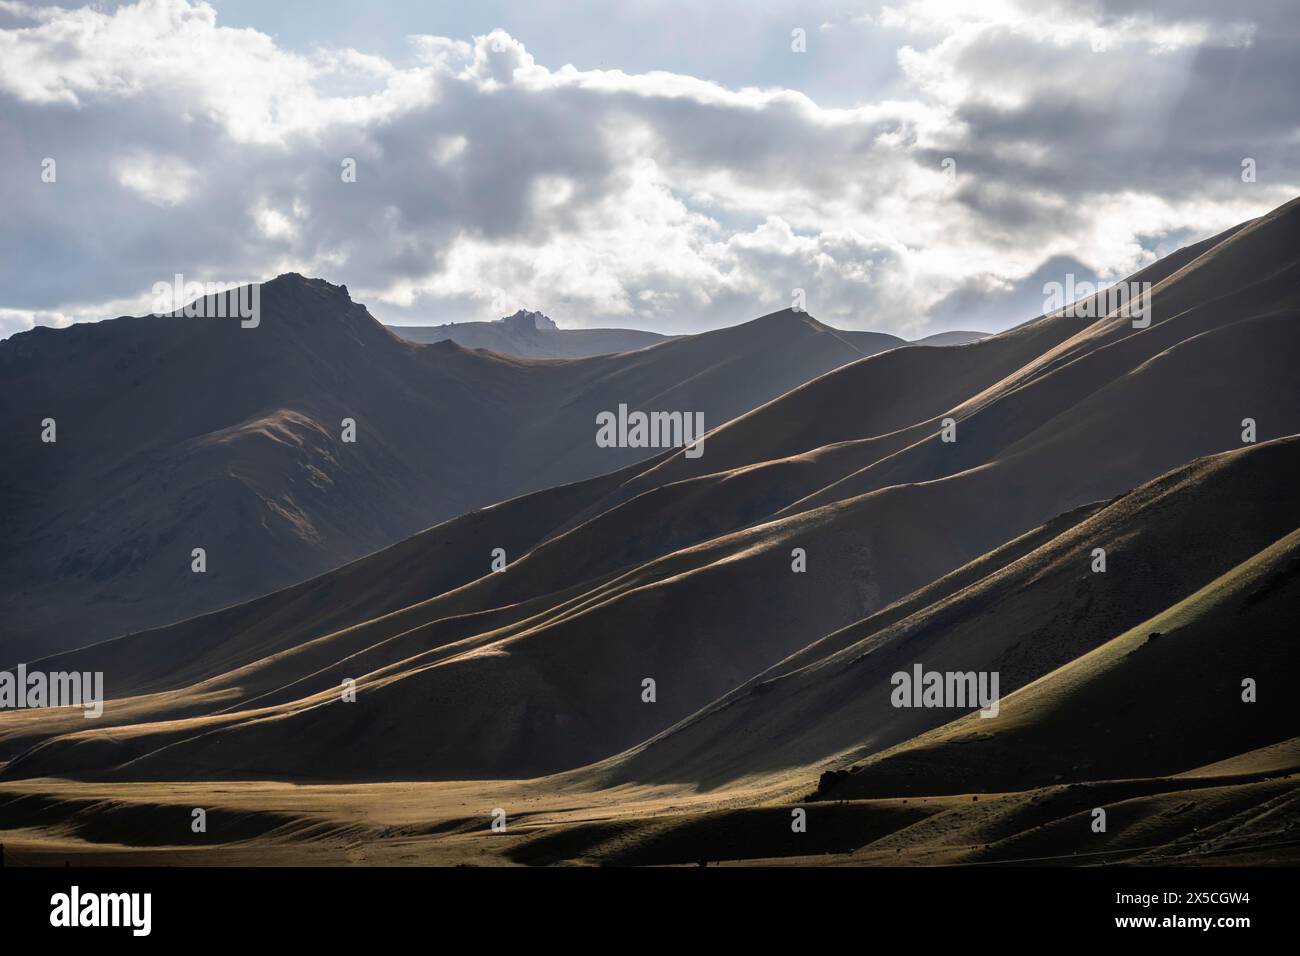 Profilo montano e colline alla luce del sole, paesaggio montano spettacolare, Tian Shan, Sky Mountains, Sary Jaz Valley, Kirghizistan Foto Stock